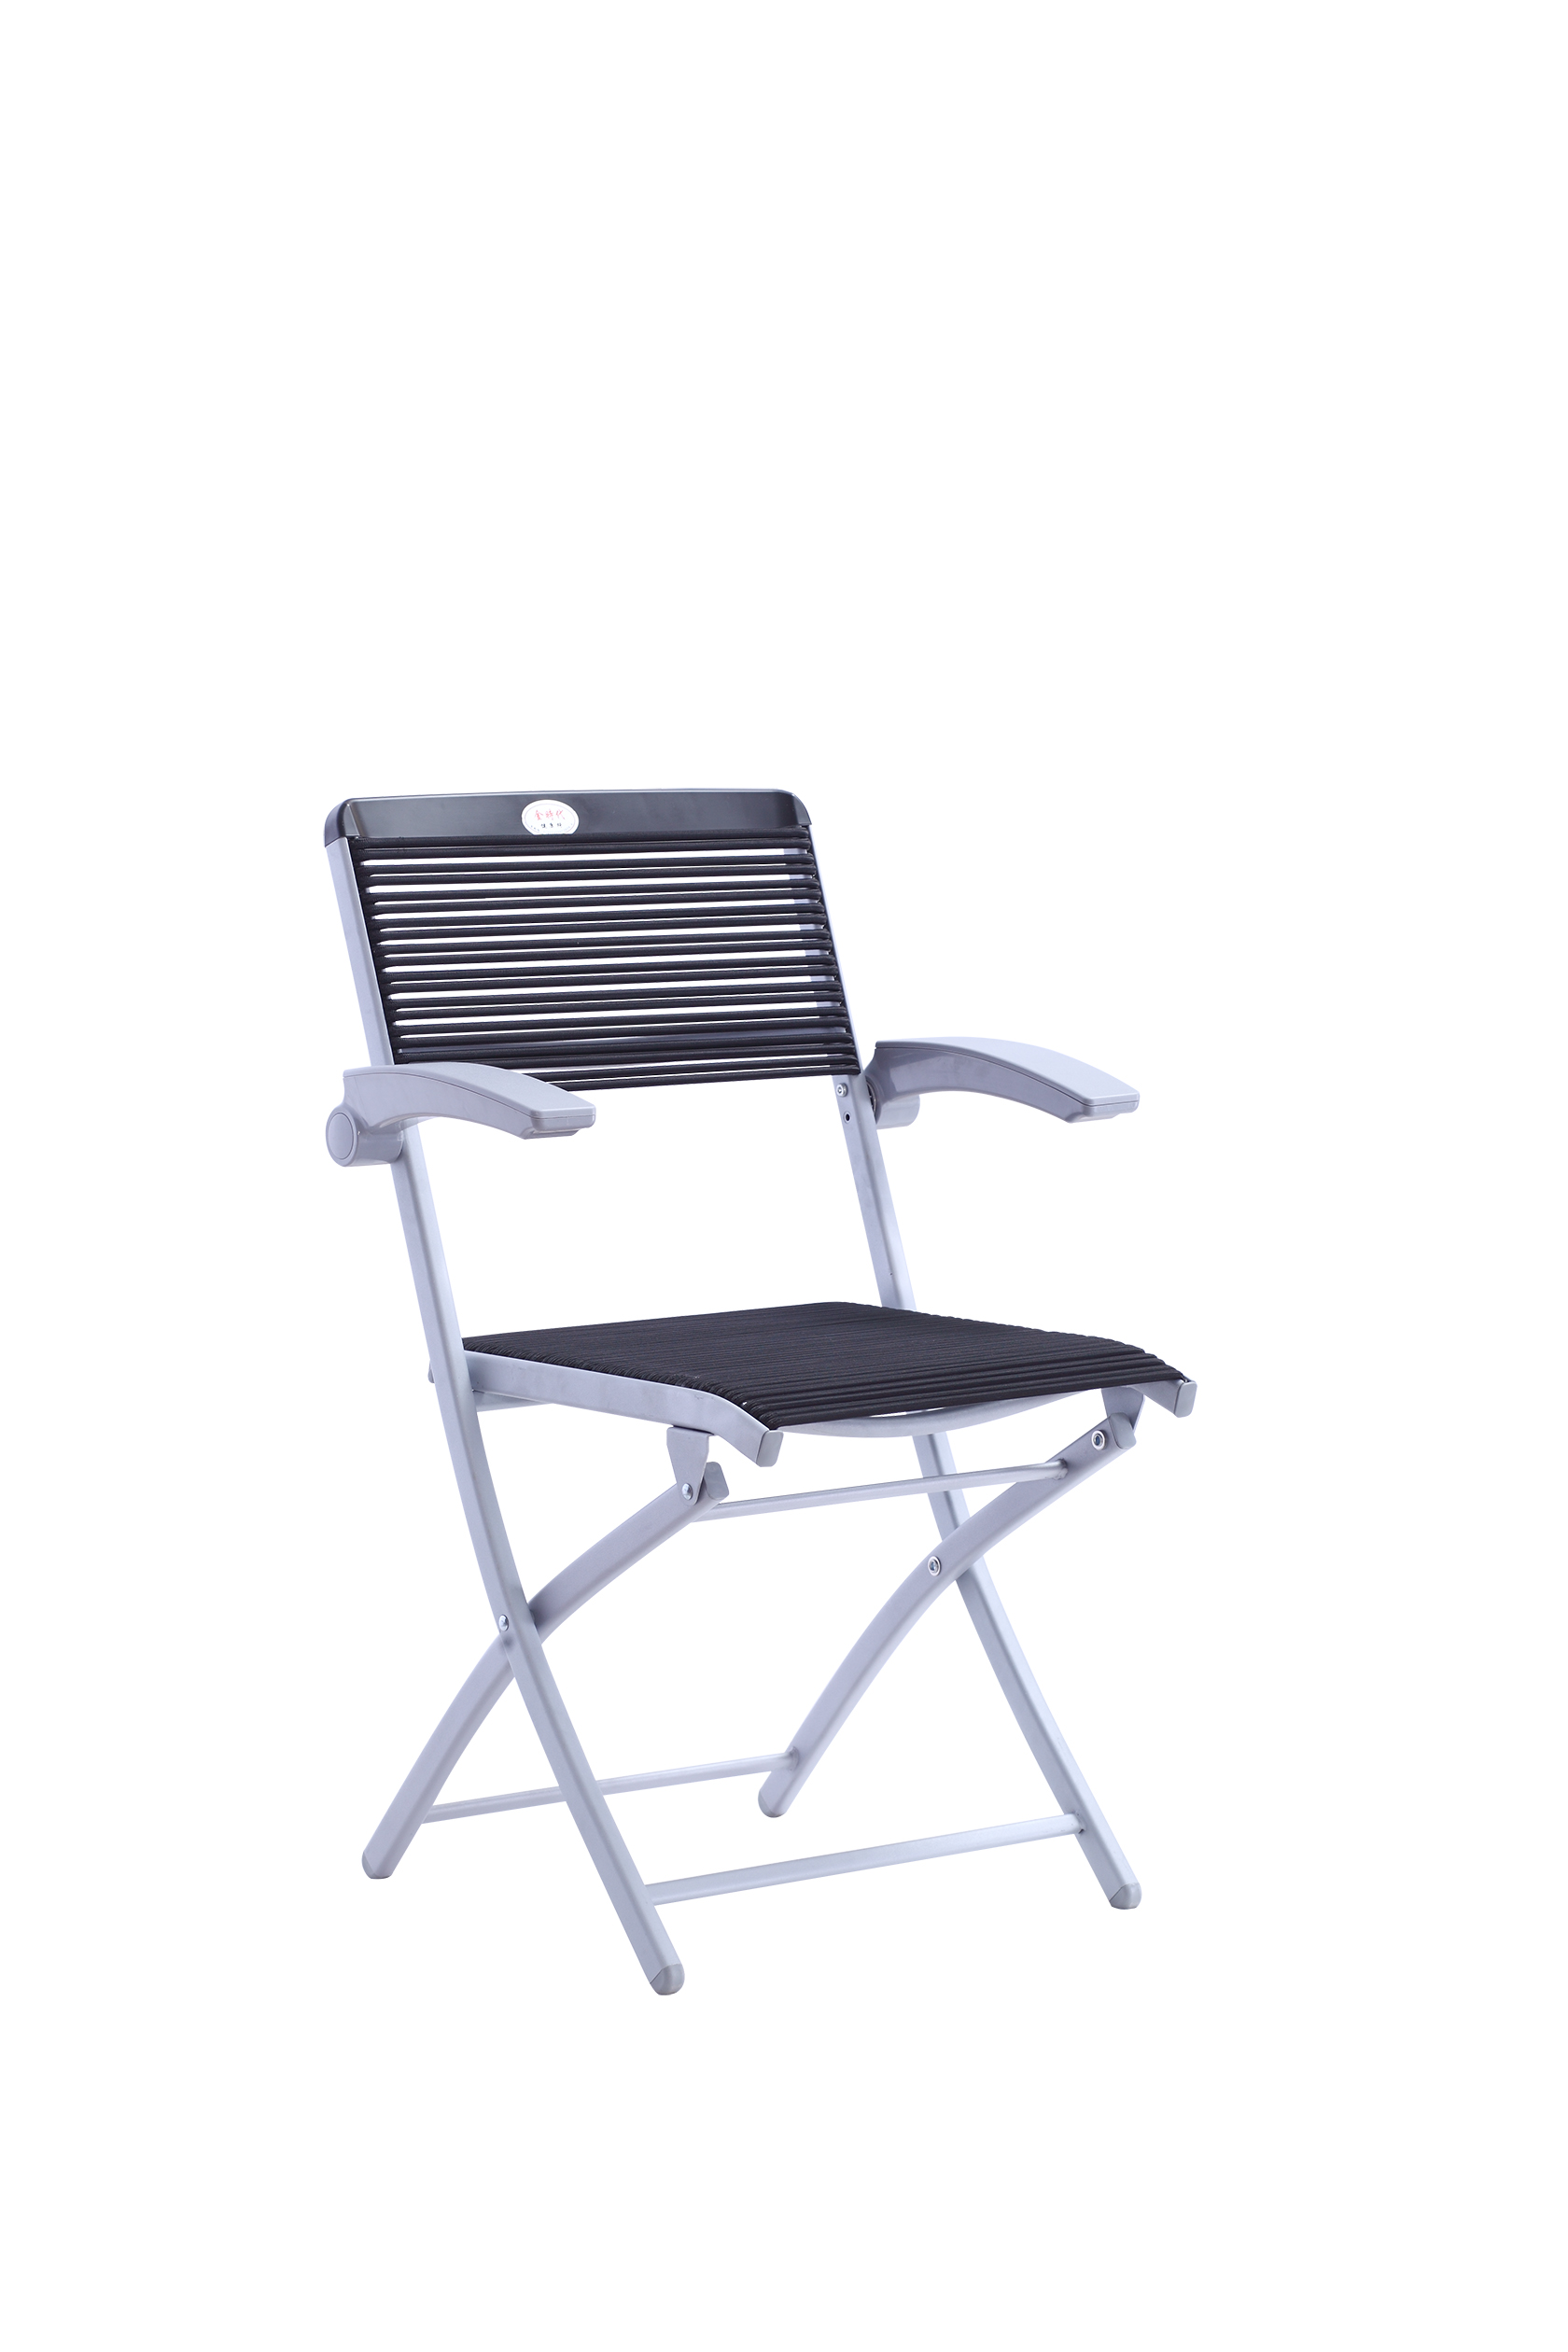 YG7032-3A特价健康椅办公椅 家用餐桌椅户外折叠椅可定制图片